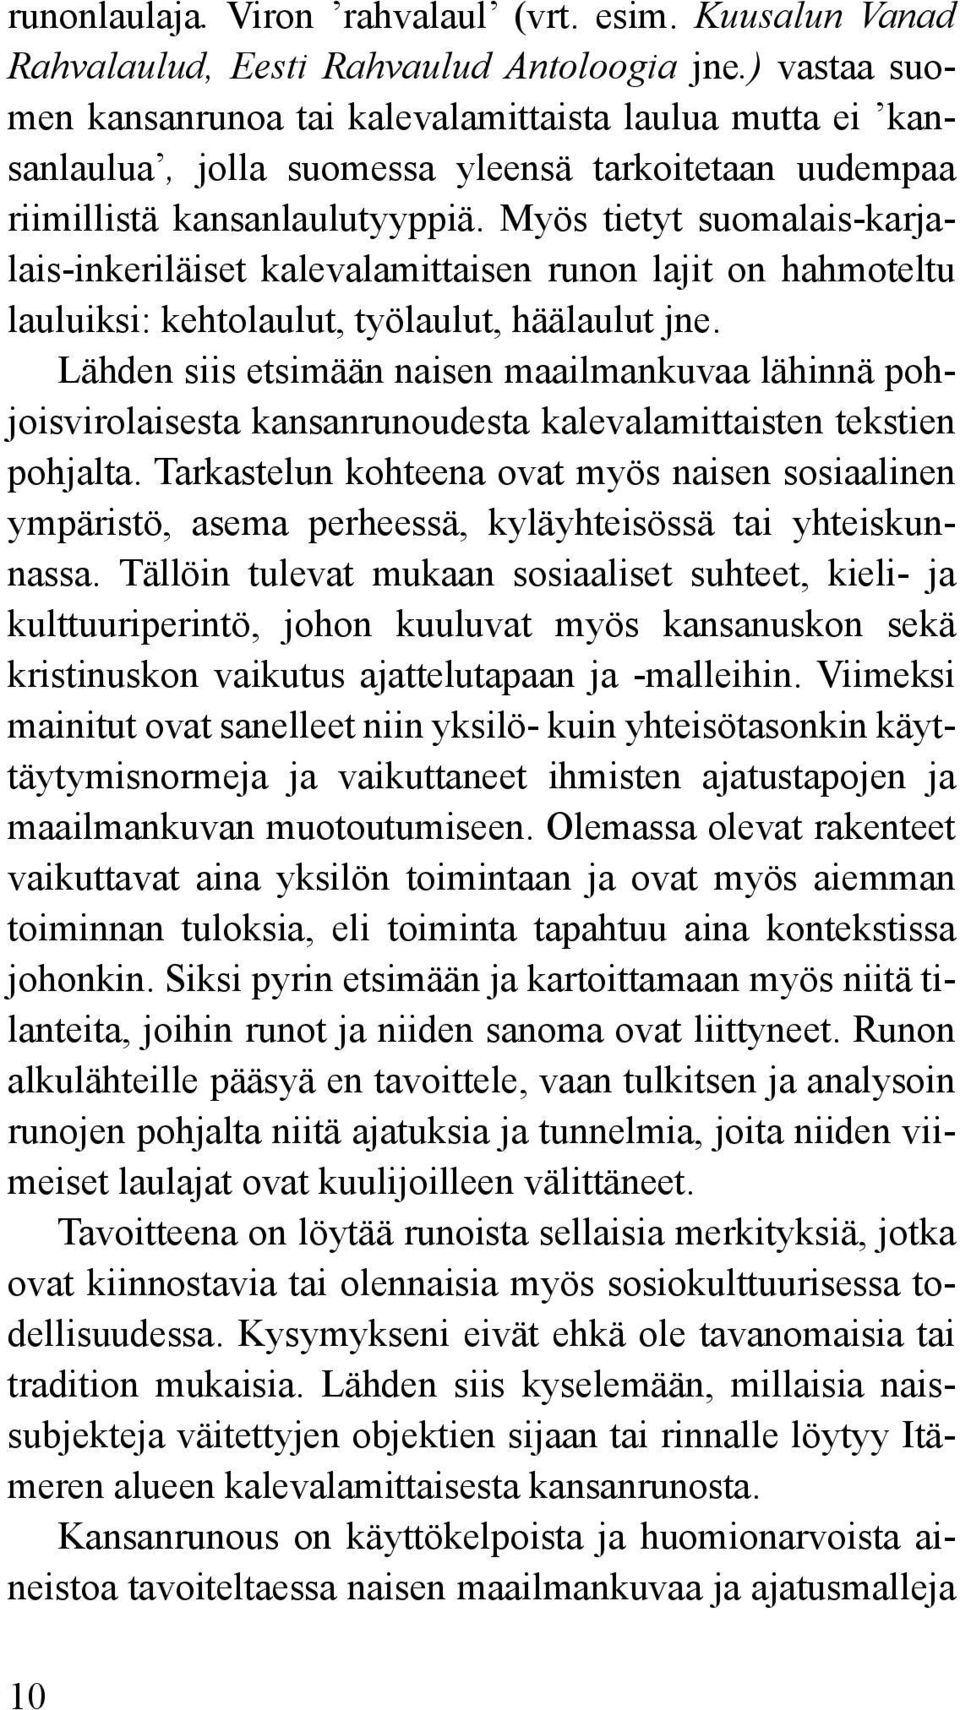 Myös tietyt suomalais-karjalais-inkeriläiset kalevalamittaisen runon lajit on hahmoteltu lauluiksi: kehtolaulut, työlaulut, häälaulut jne.